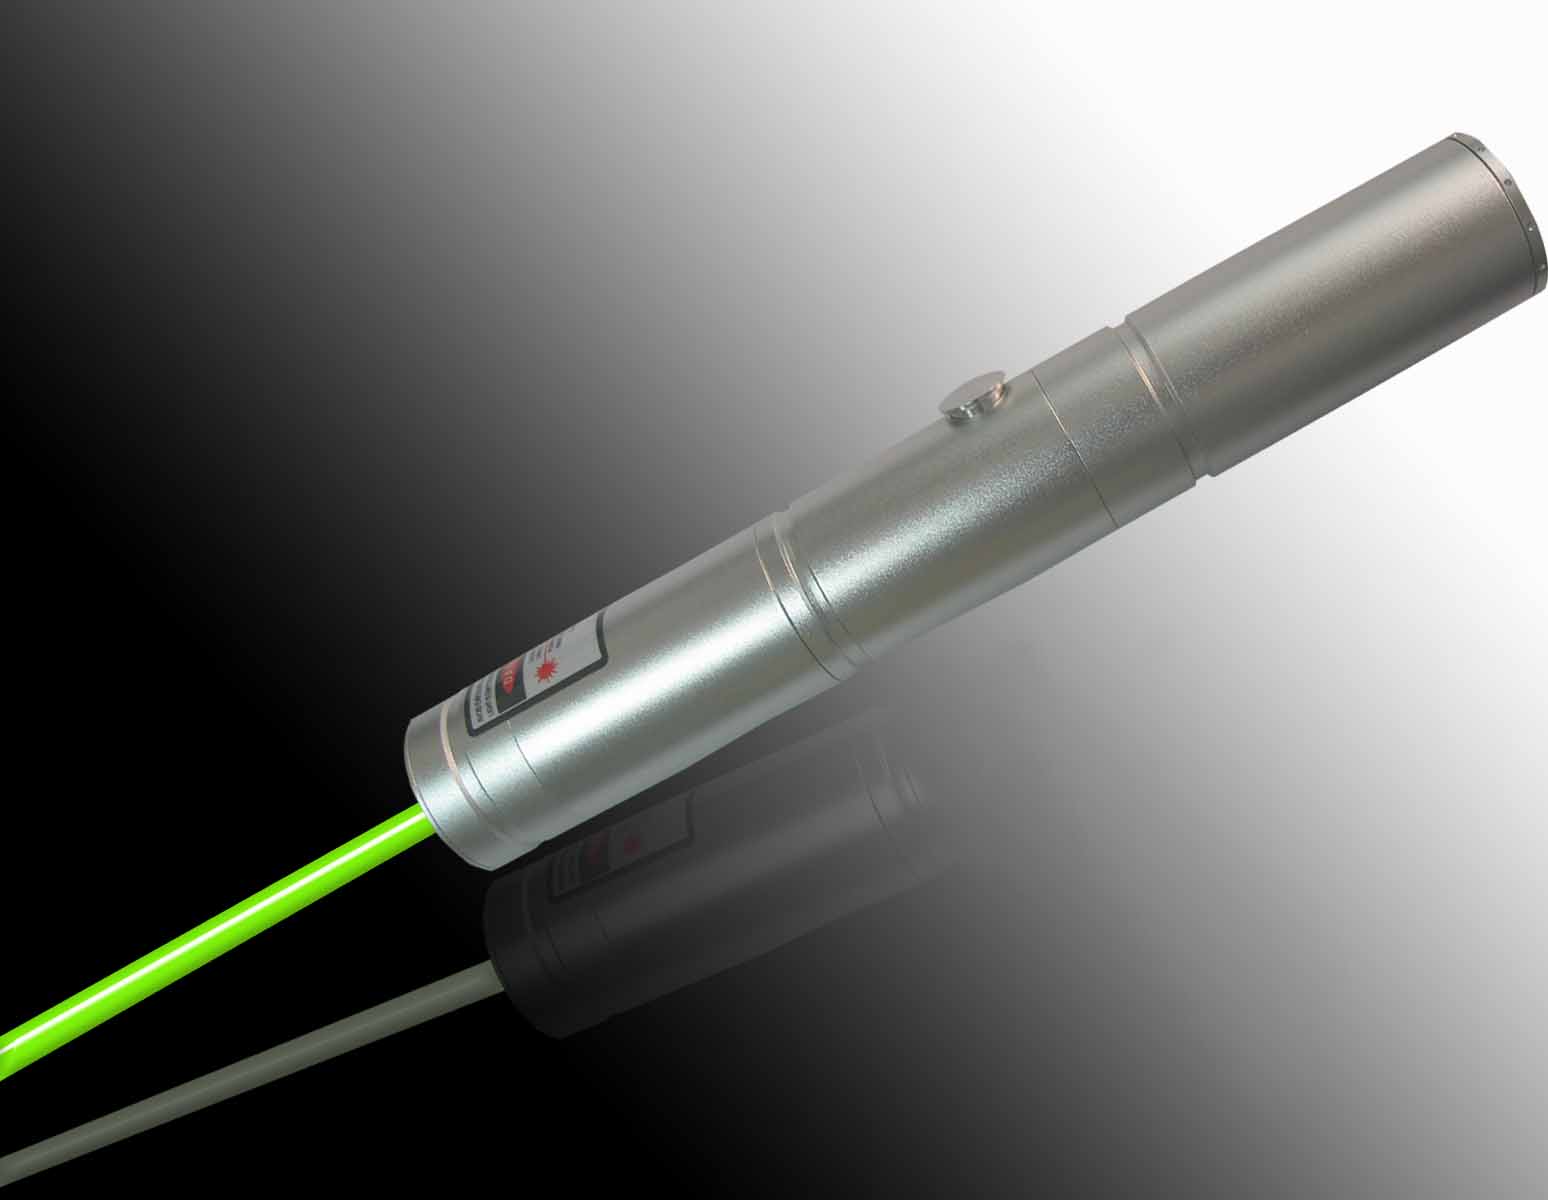 200-400mw green laser pointer